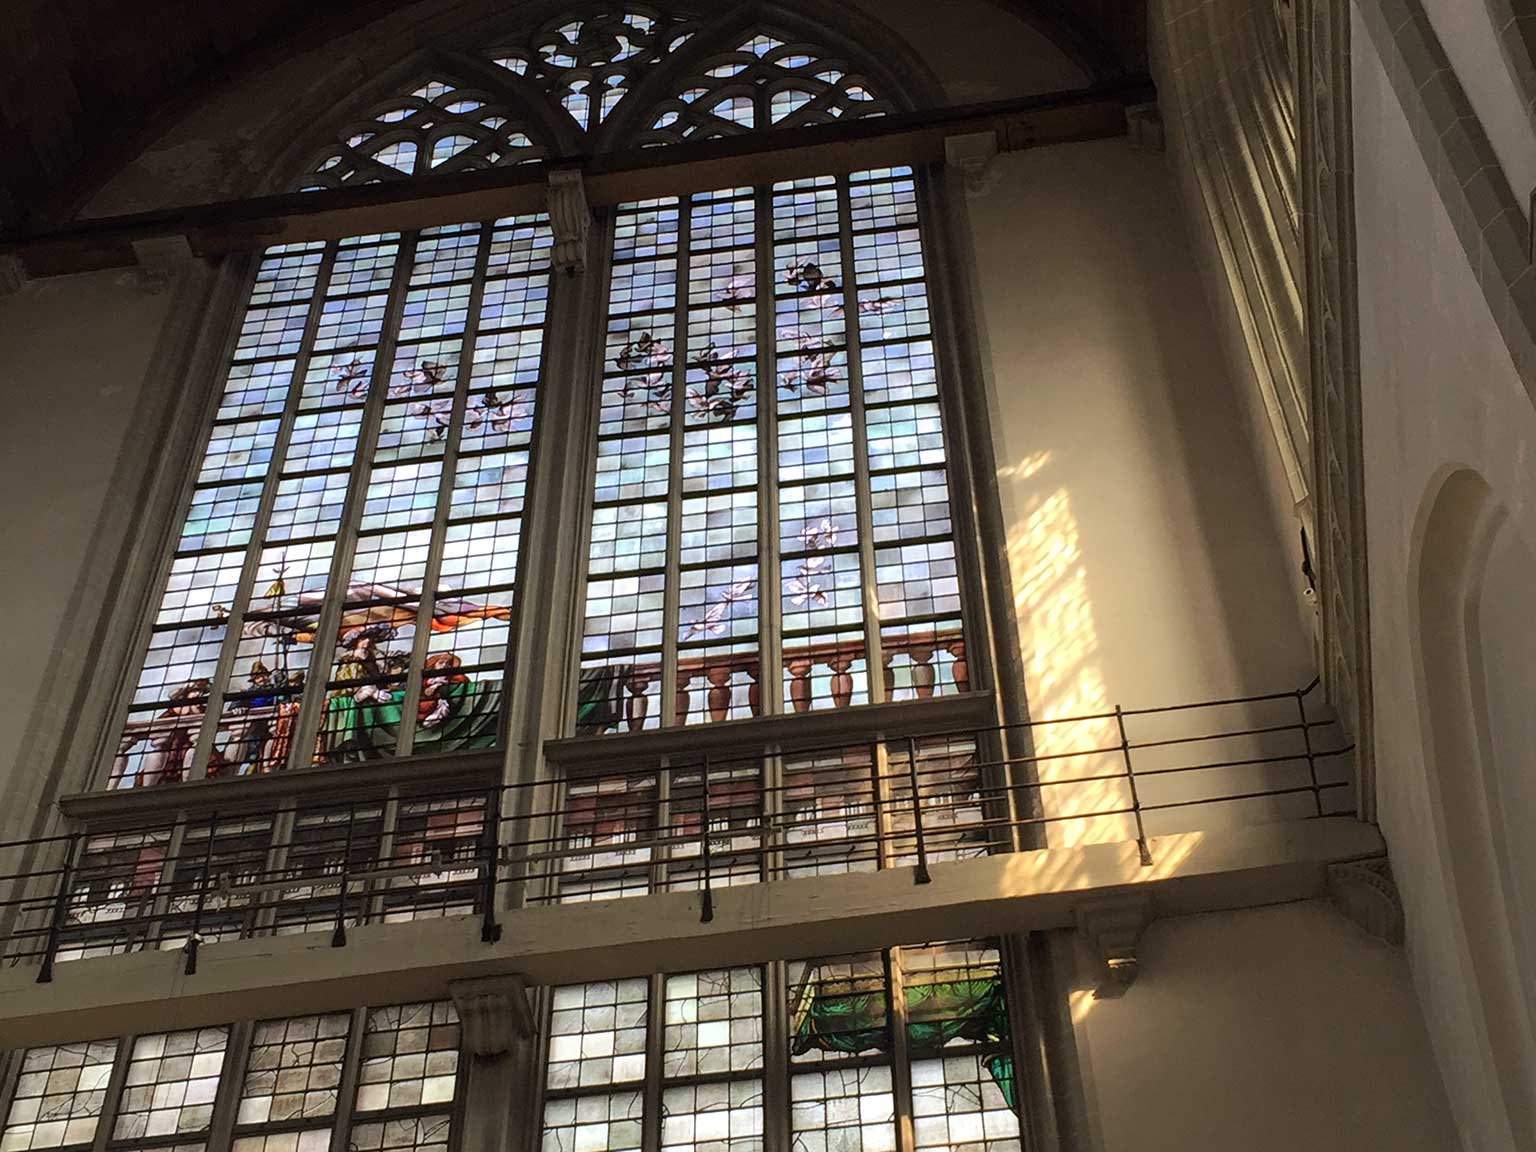 Glas-in-loodraam in de Nieuwe Kerk, Amsterdam